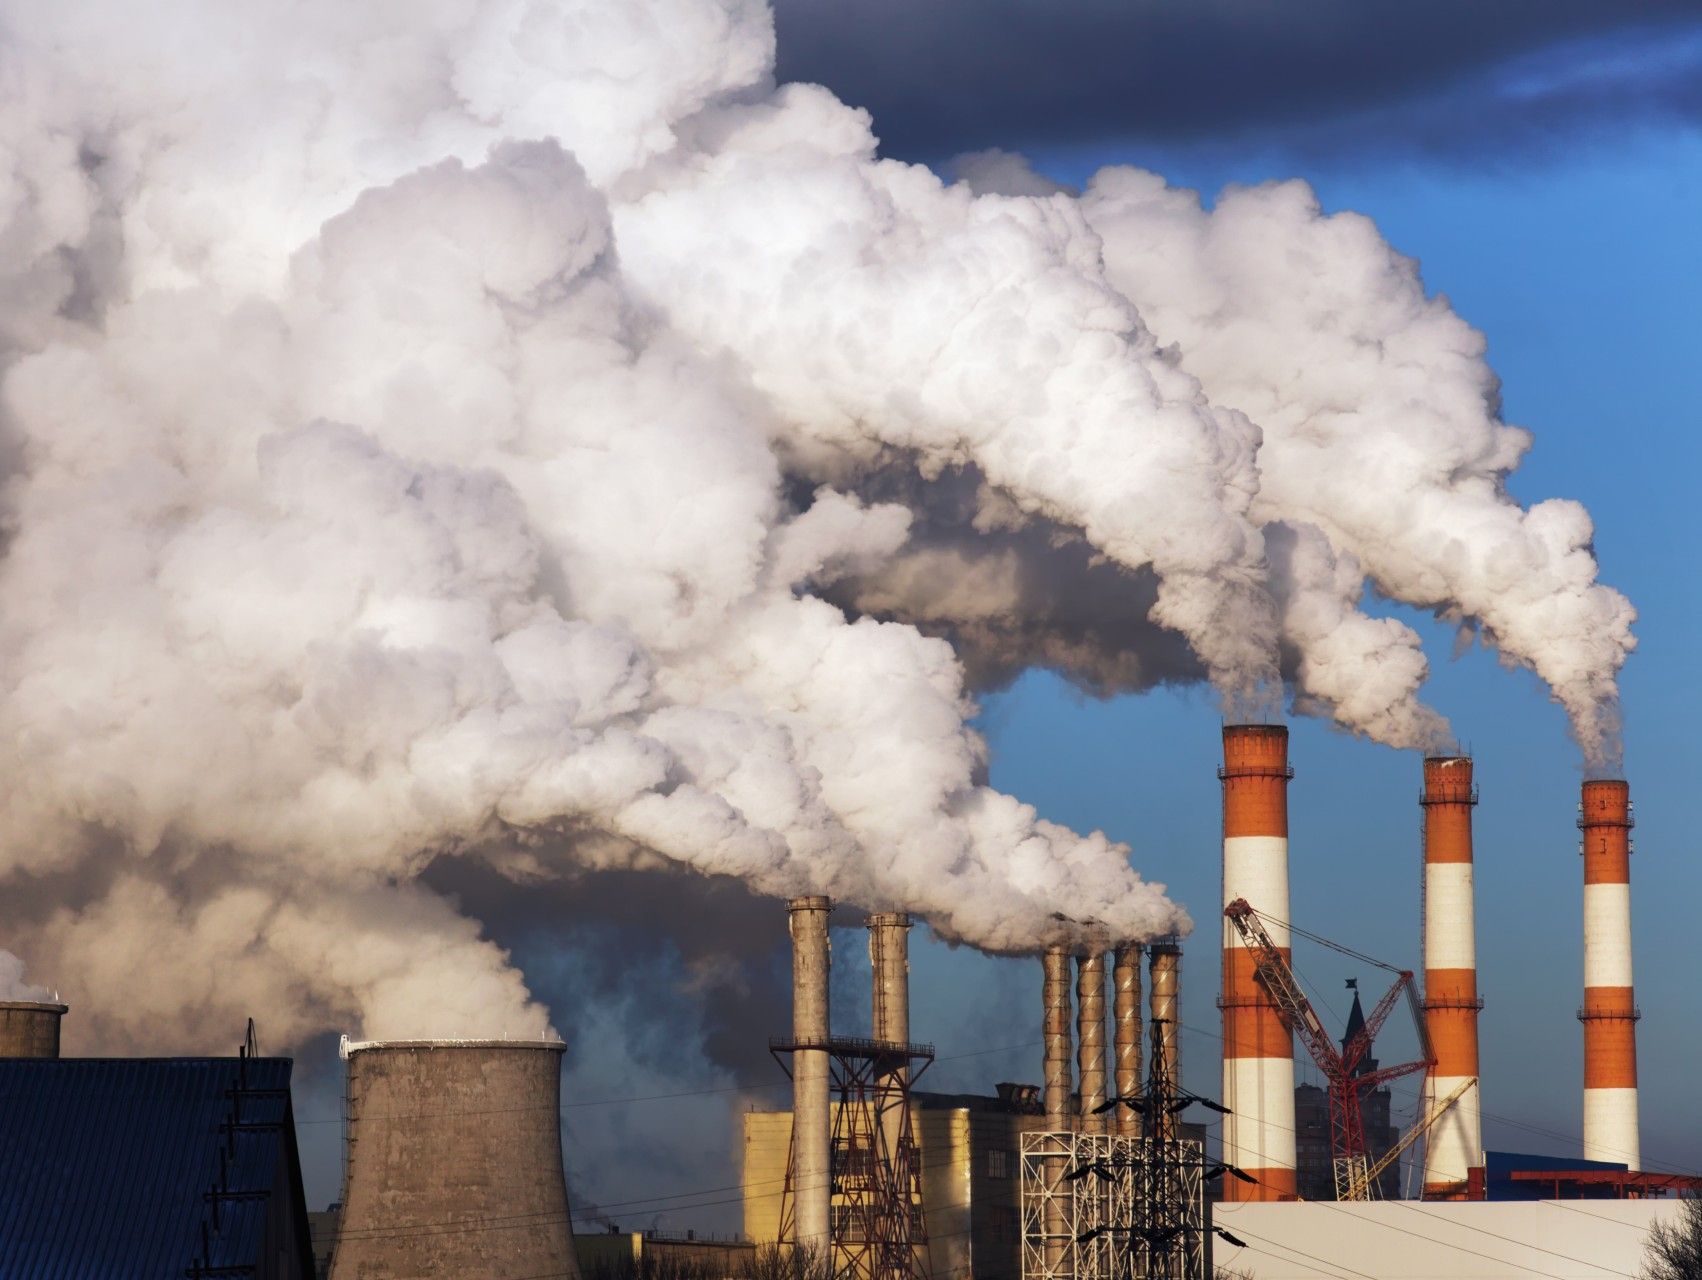 Alle virksomheder skal til klimaeksamen og kunne bestå den. Ellers risikerer forretningsmodellen at være truet. Foto: Getty Images